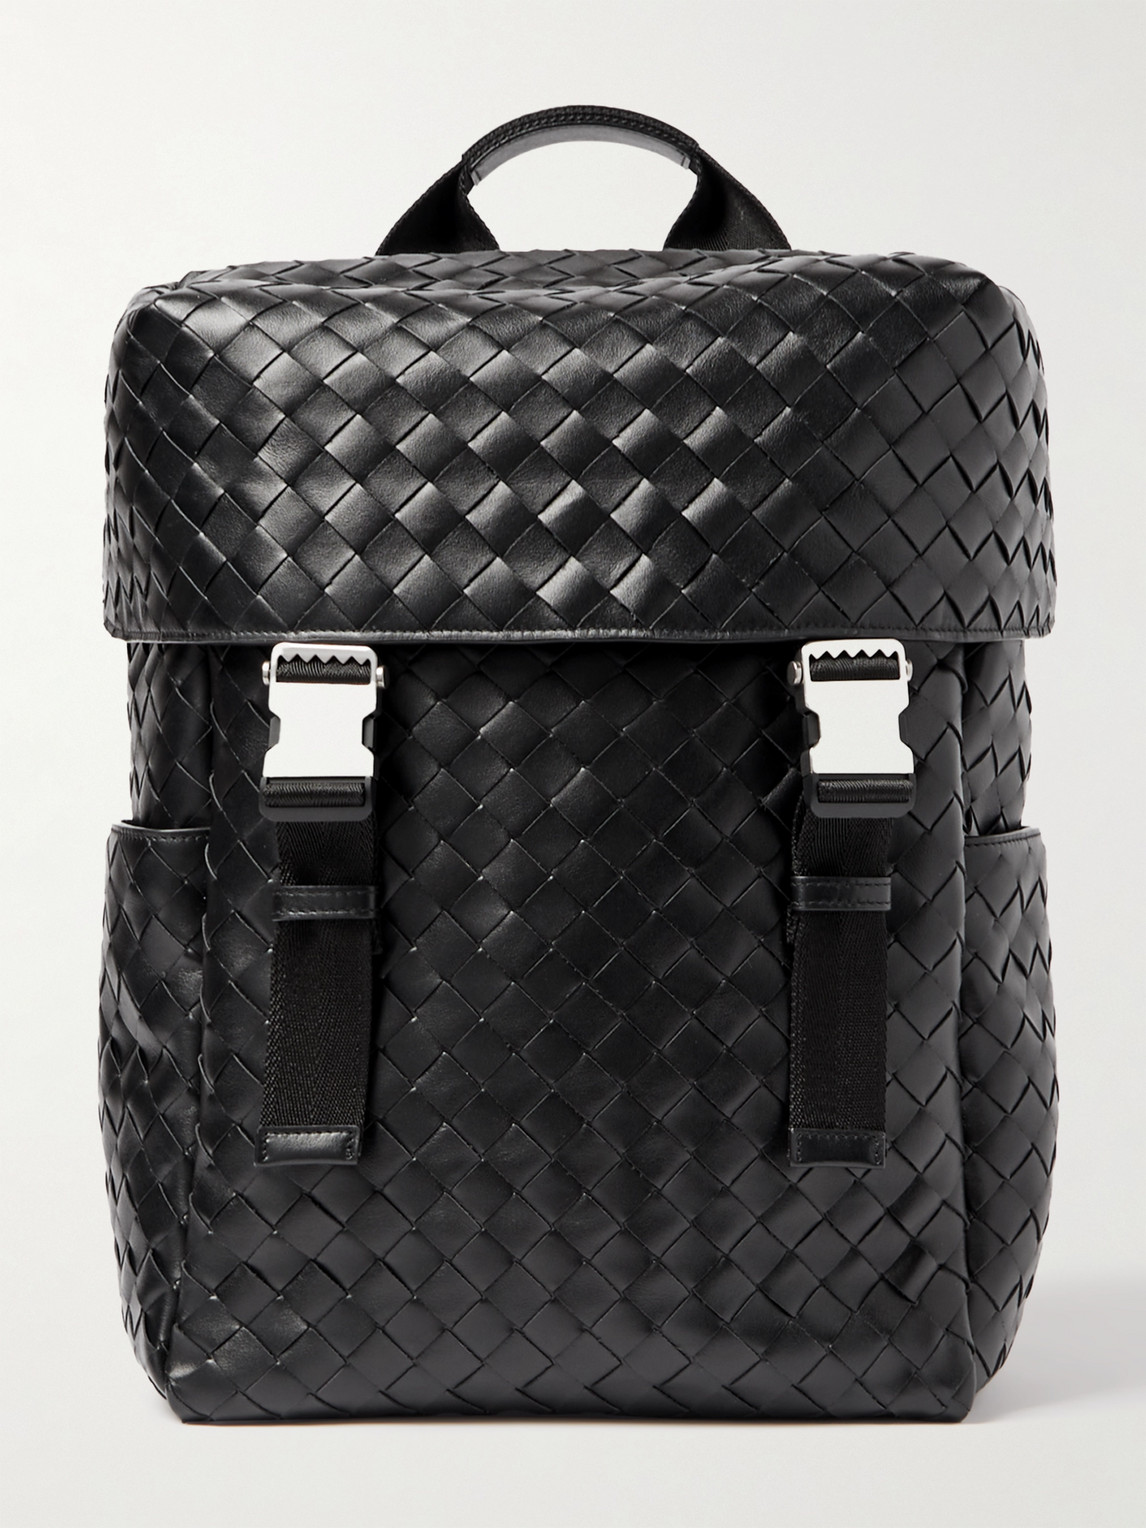 Bottega Veneta Intrecciato Leather And Mesh Backpack In Black